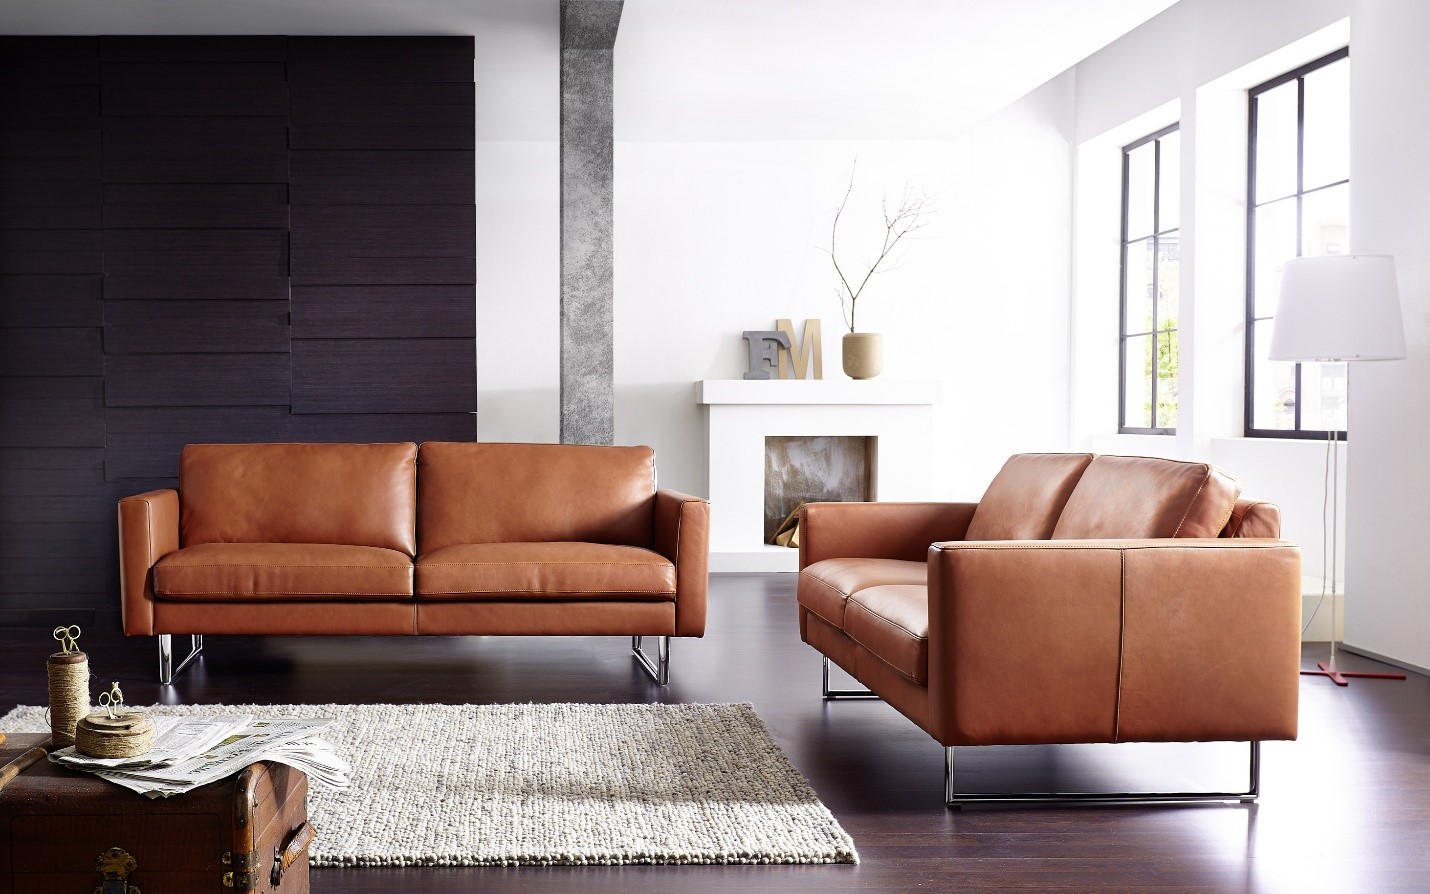 Khám phá những chất liệu bọc ghế sofa phù hợp cho nội thất nhà bạn